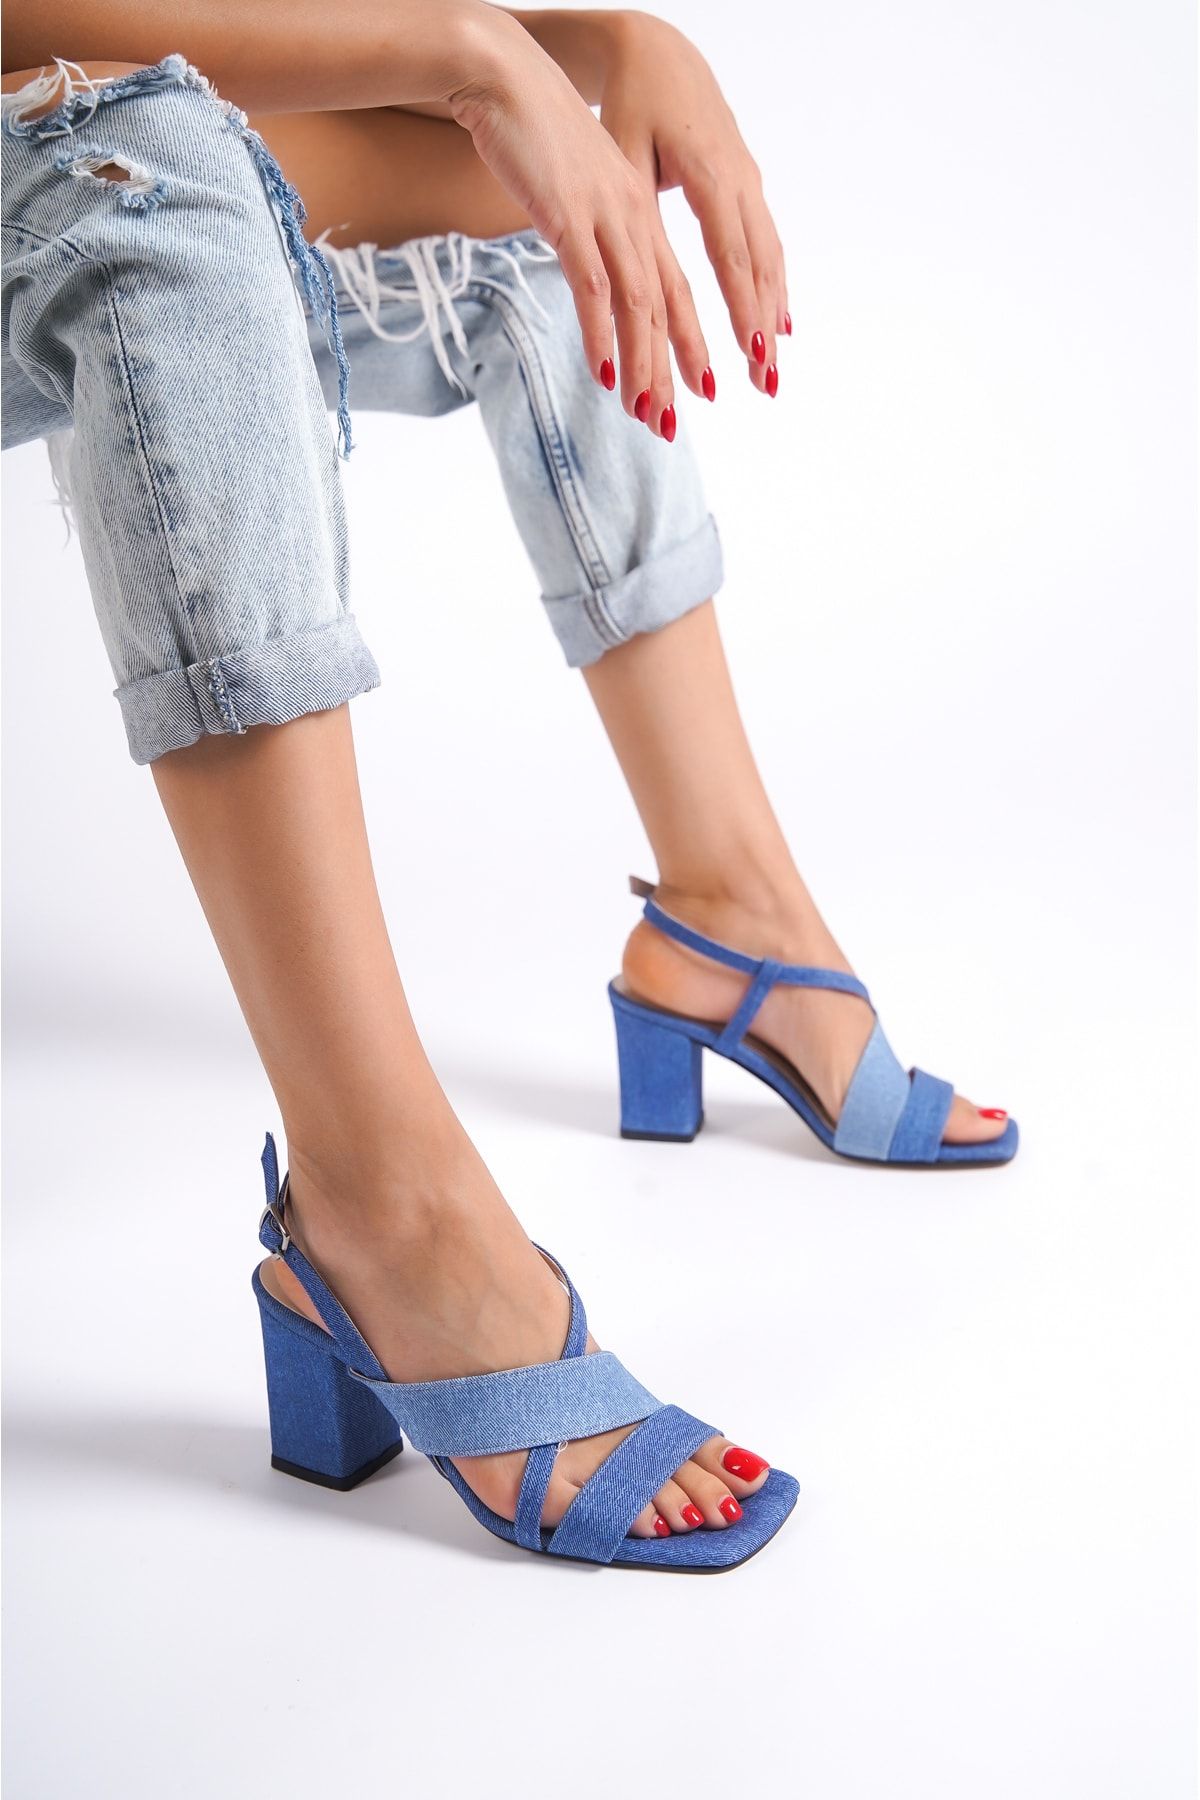 Limeo Açık Koyu Mavi Kot Renkli Kadın X Şeritli Tokalı Yazlık Kalın Yüksek Topuklu Ayakkabı